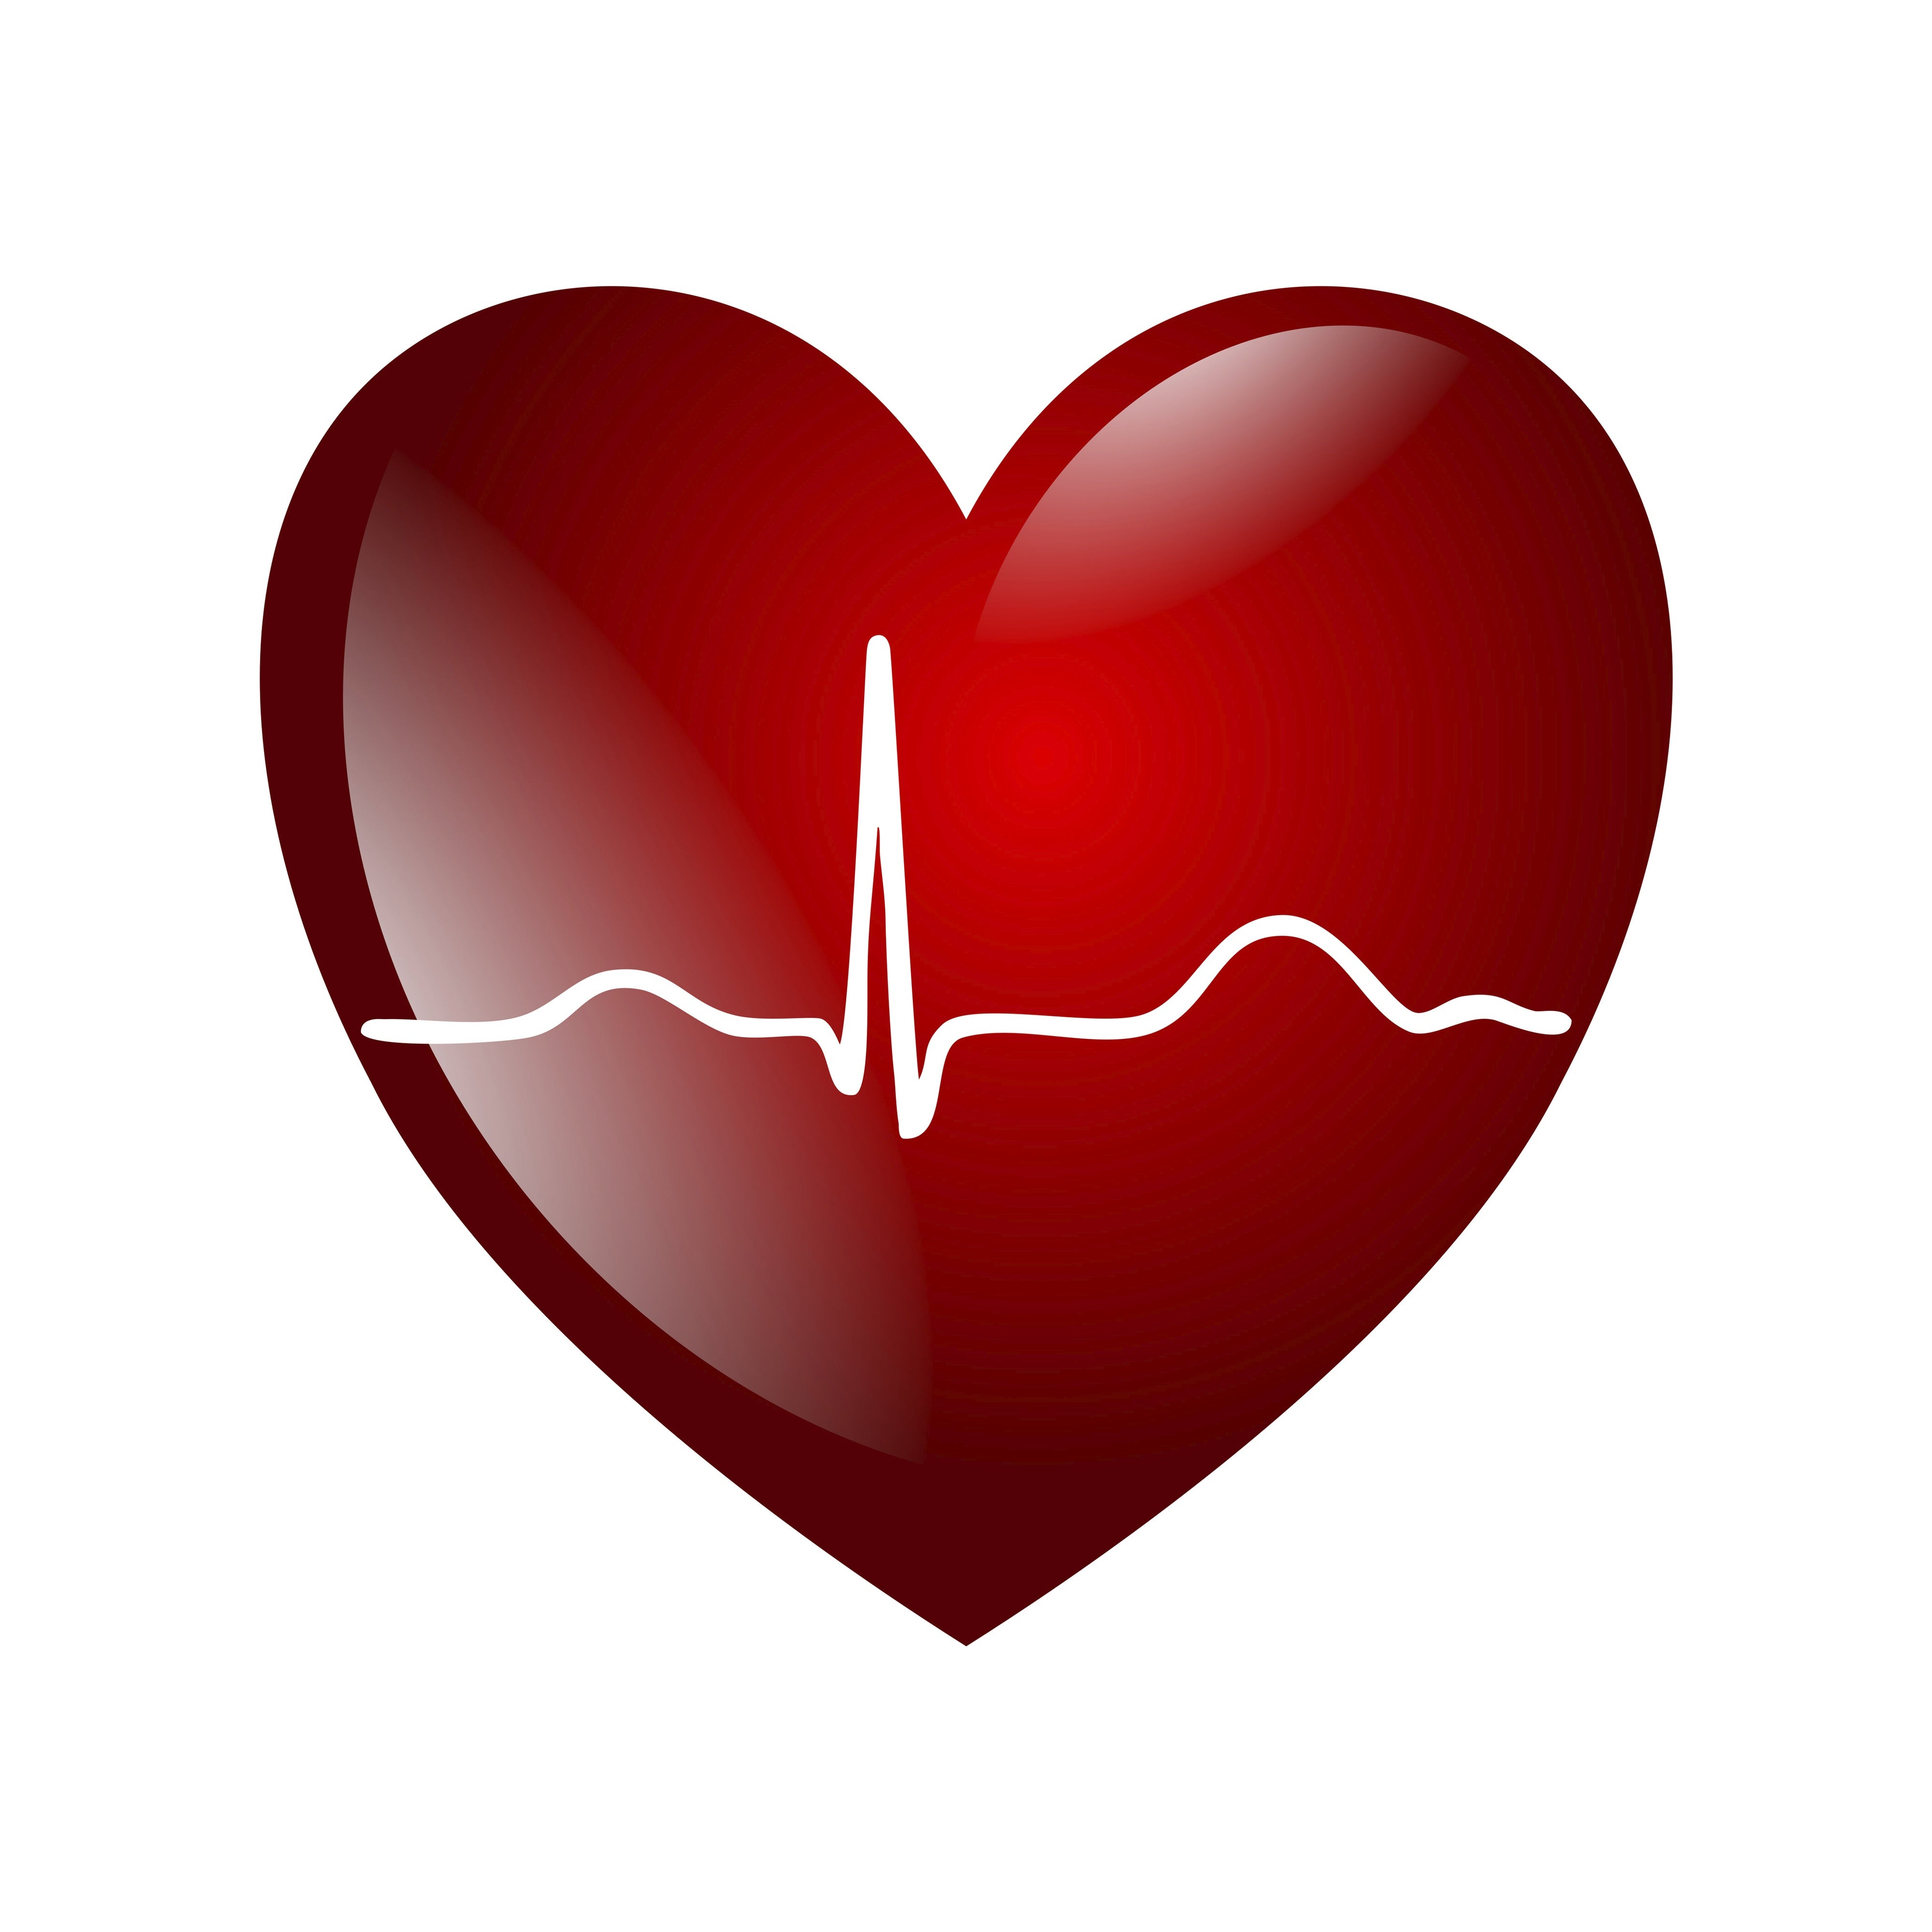 Biometric Identifies You in a Heartbeat | Scientific American